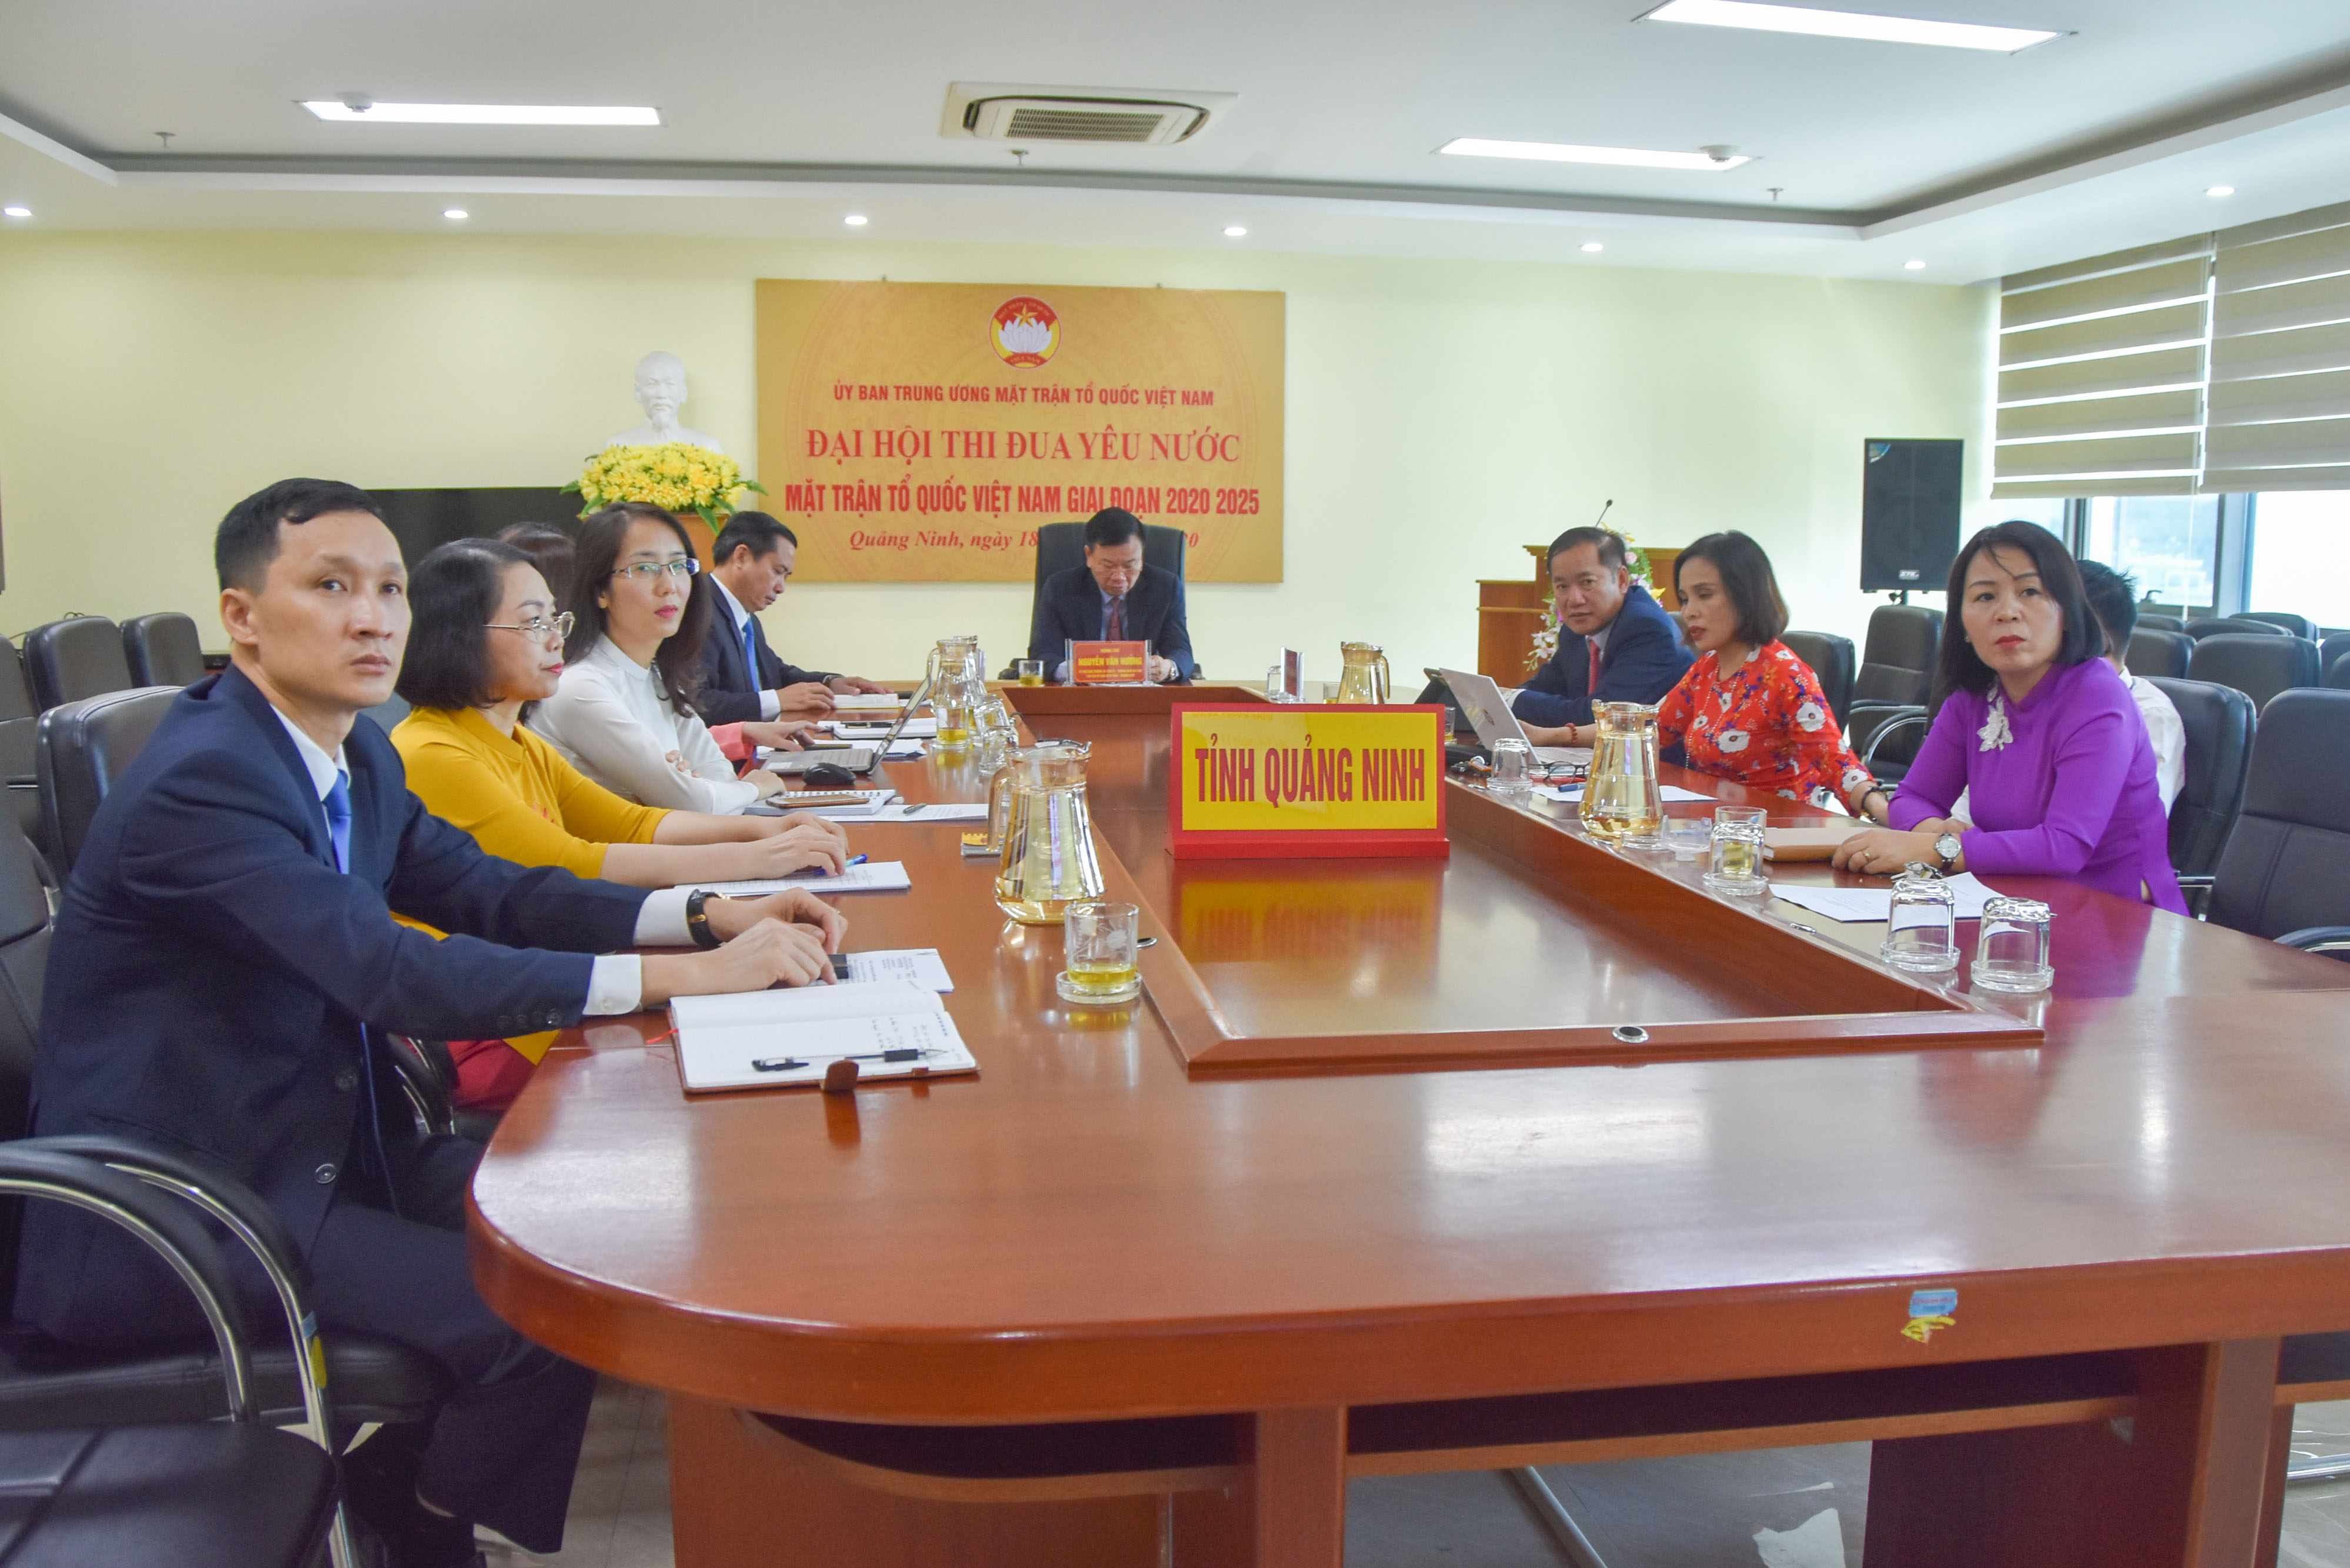 Các đại biểu tham dự đại hội tại điểm cầu Quảng Ninh.